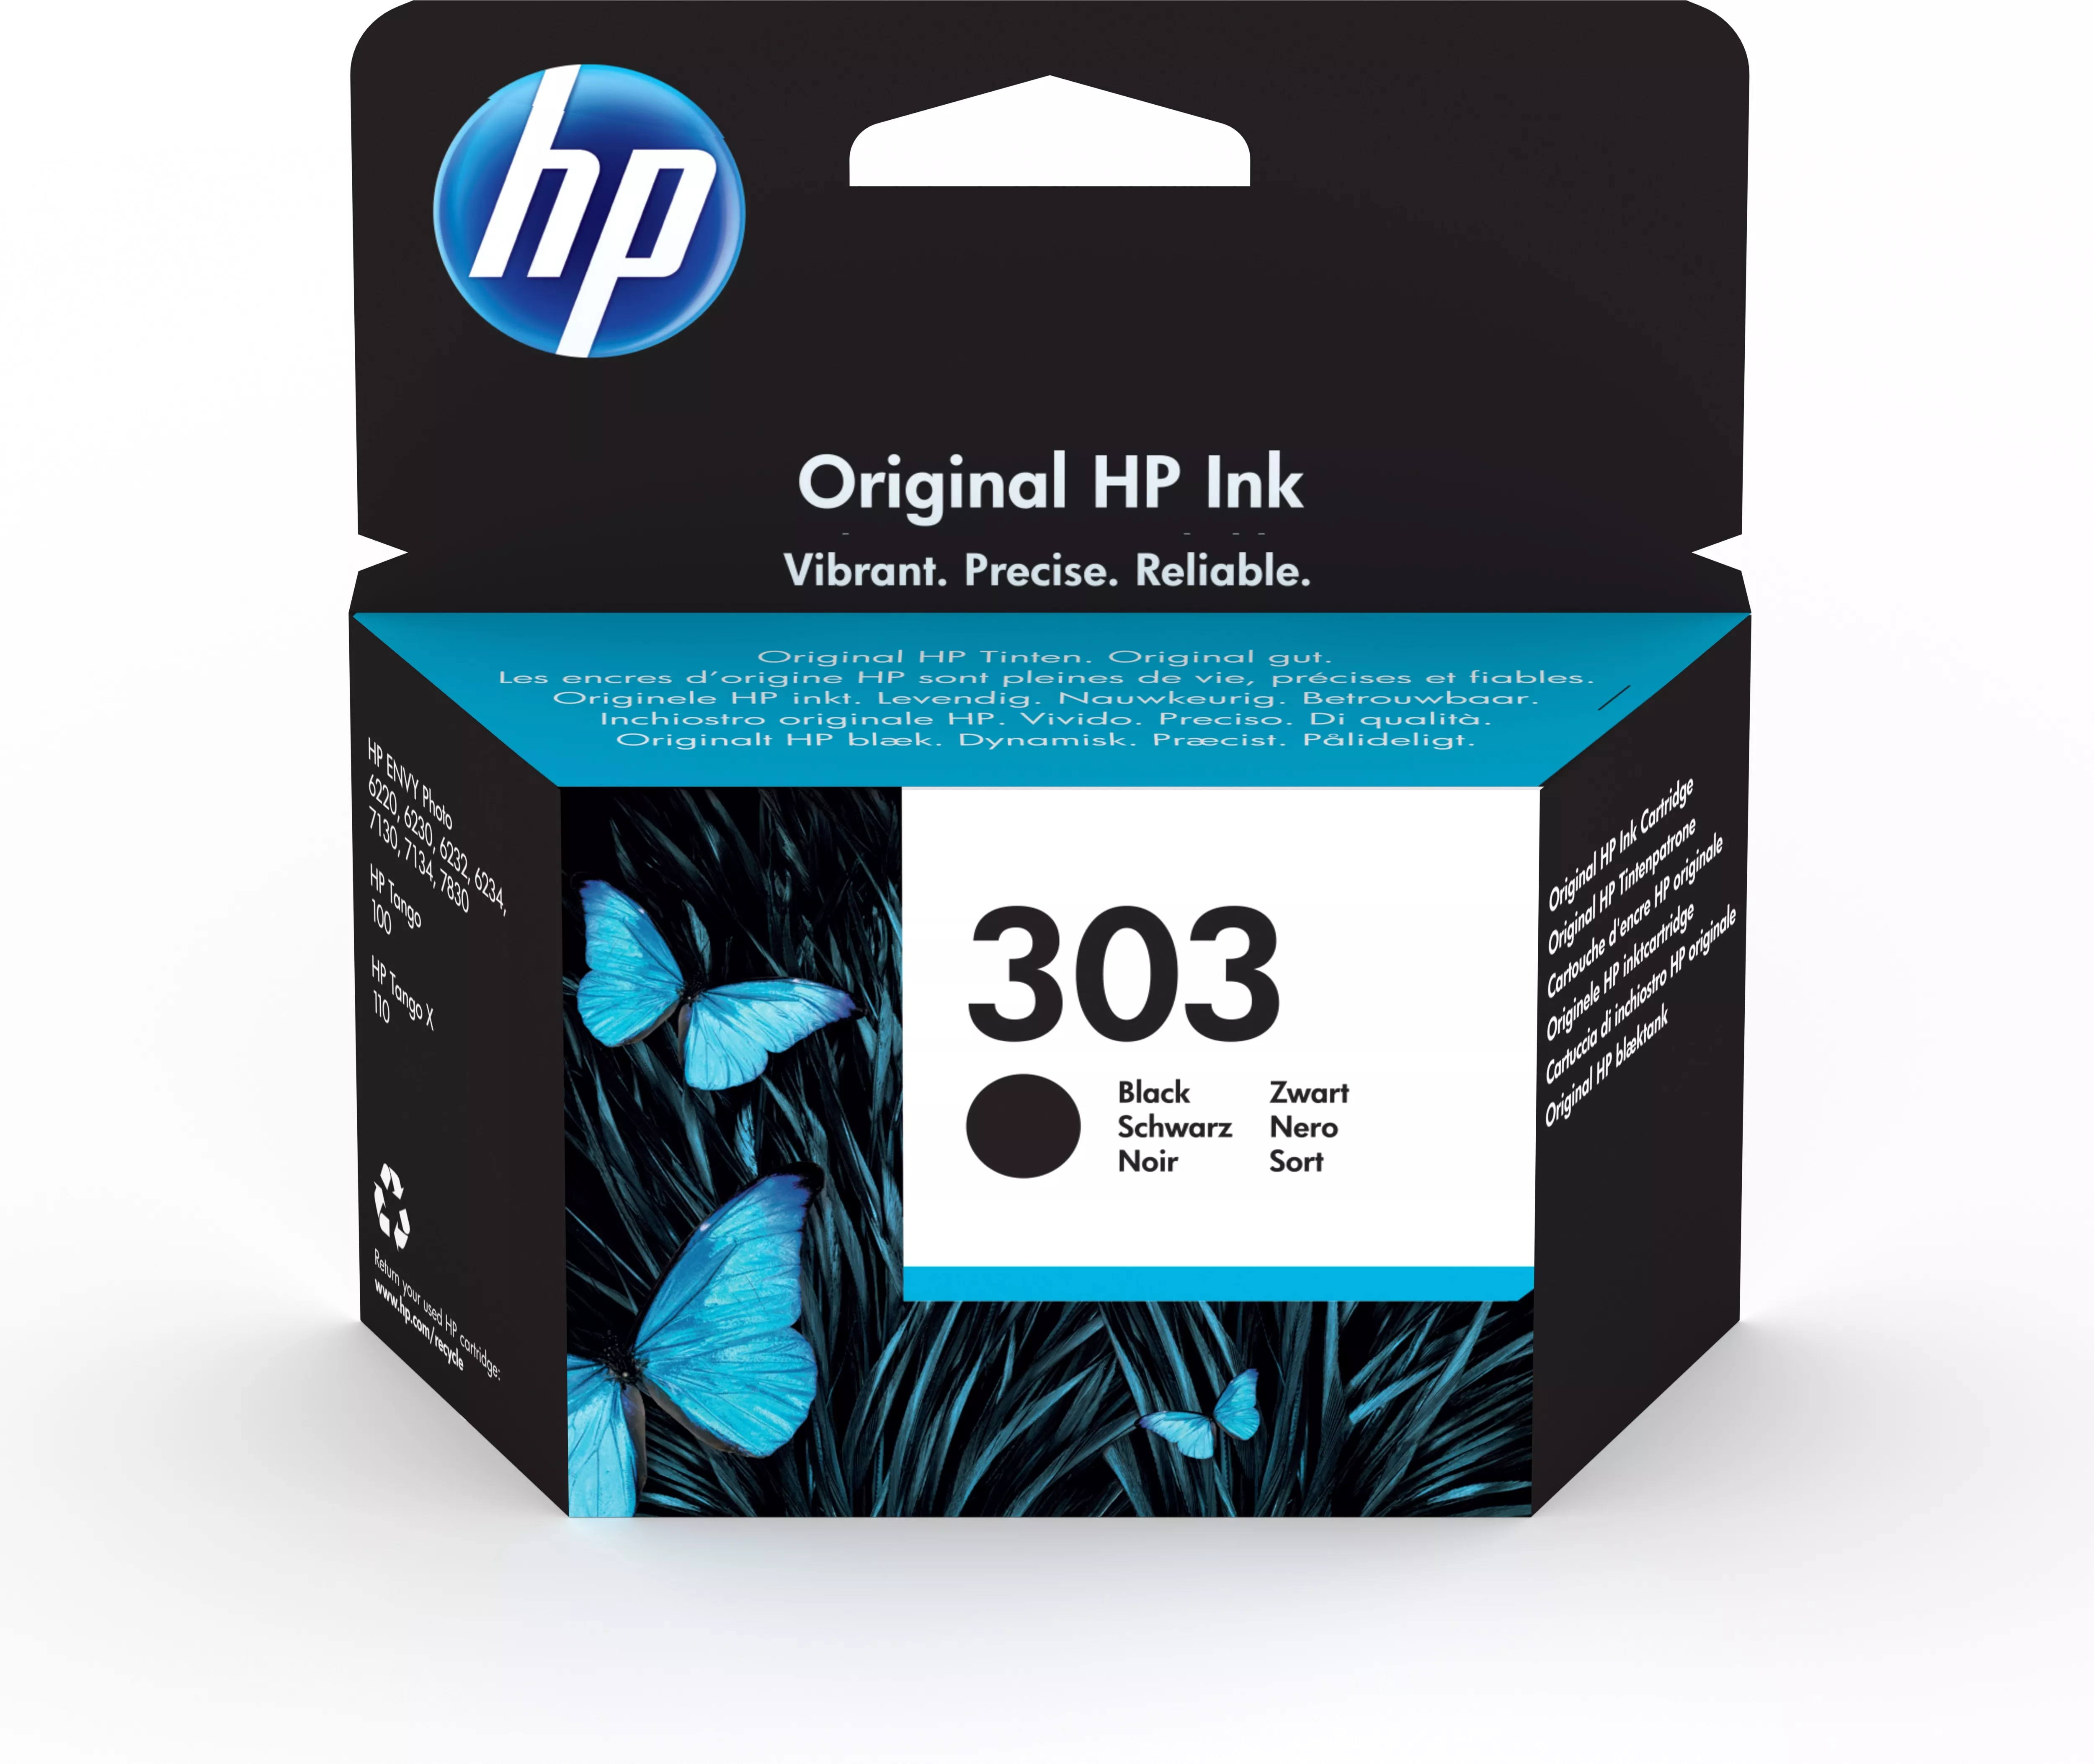 Achat HP 303 Black Ink Cartridge et autres produits de la marque HP